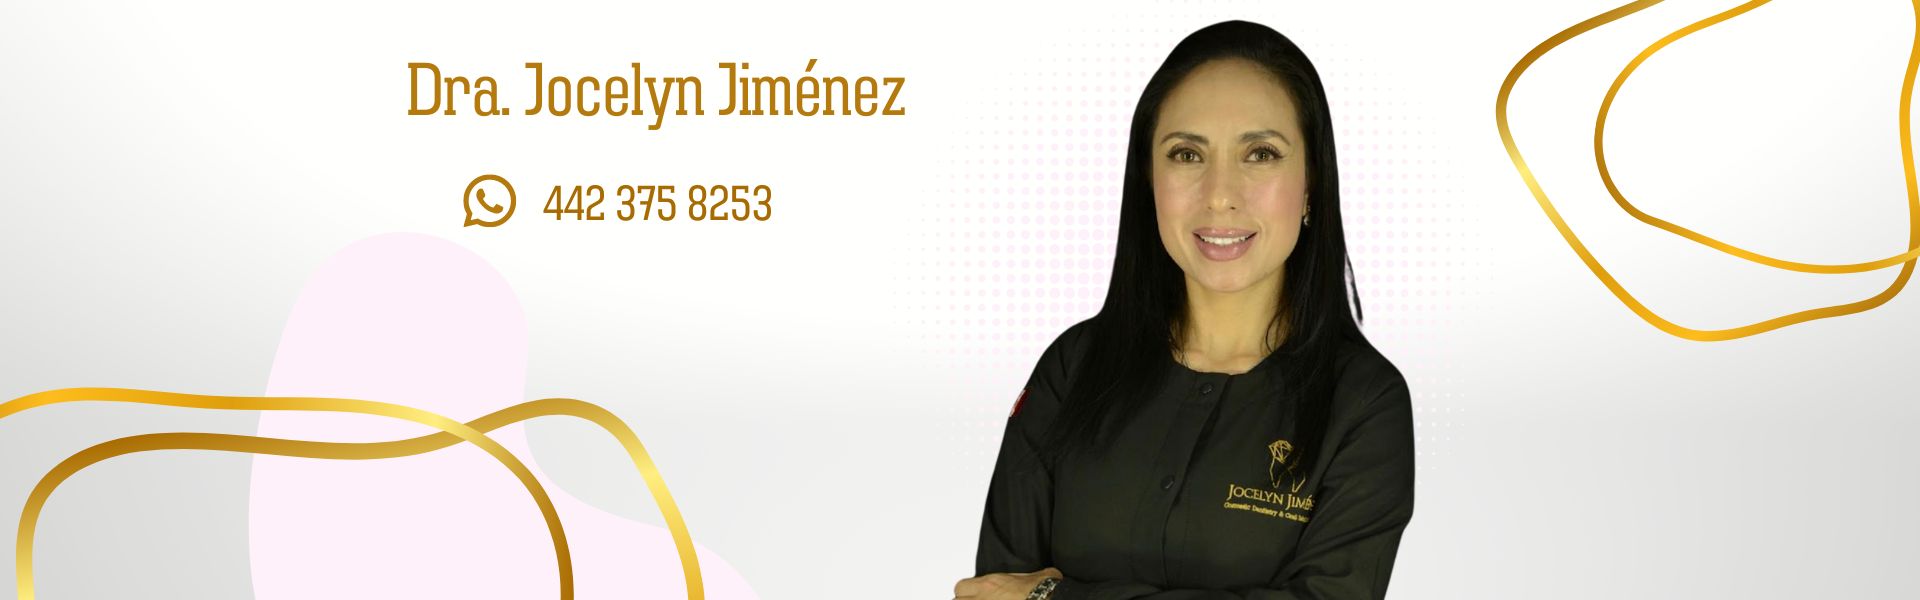 Odontóloga Especializada y Certificada en Querétaro. Dra. Jocelyn Jiménez